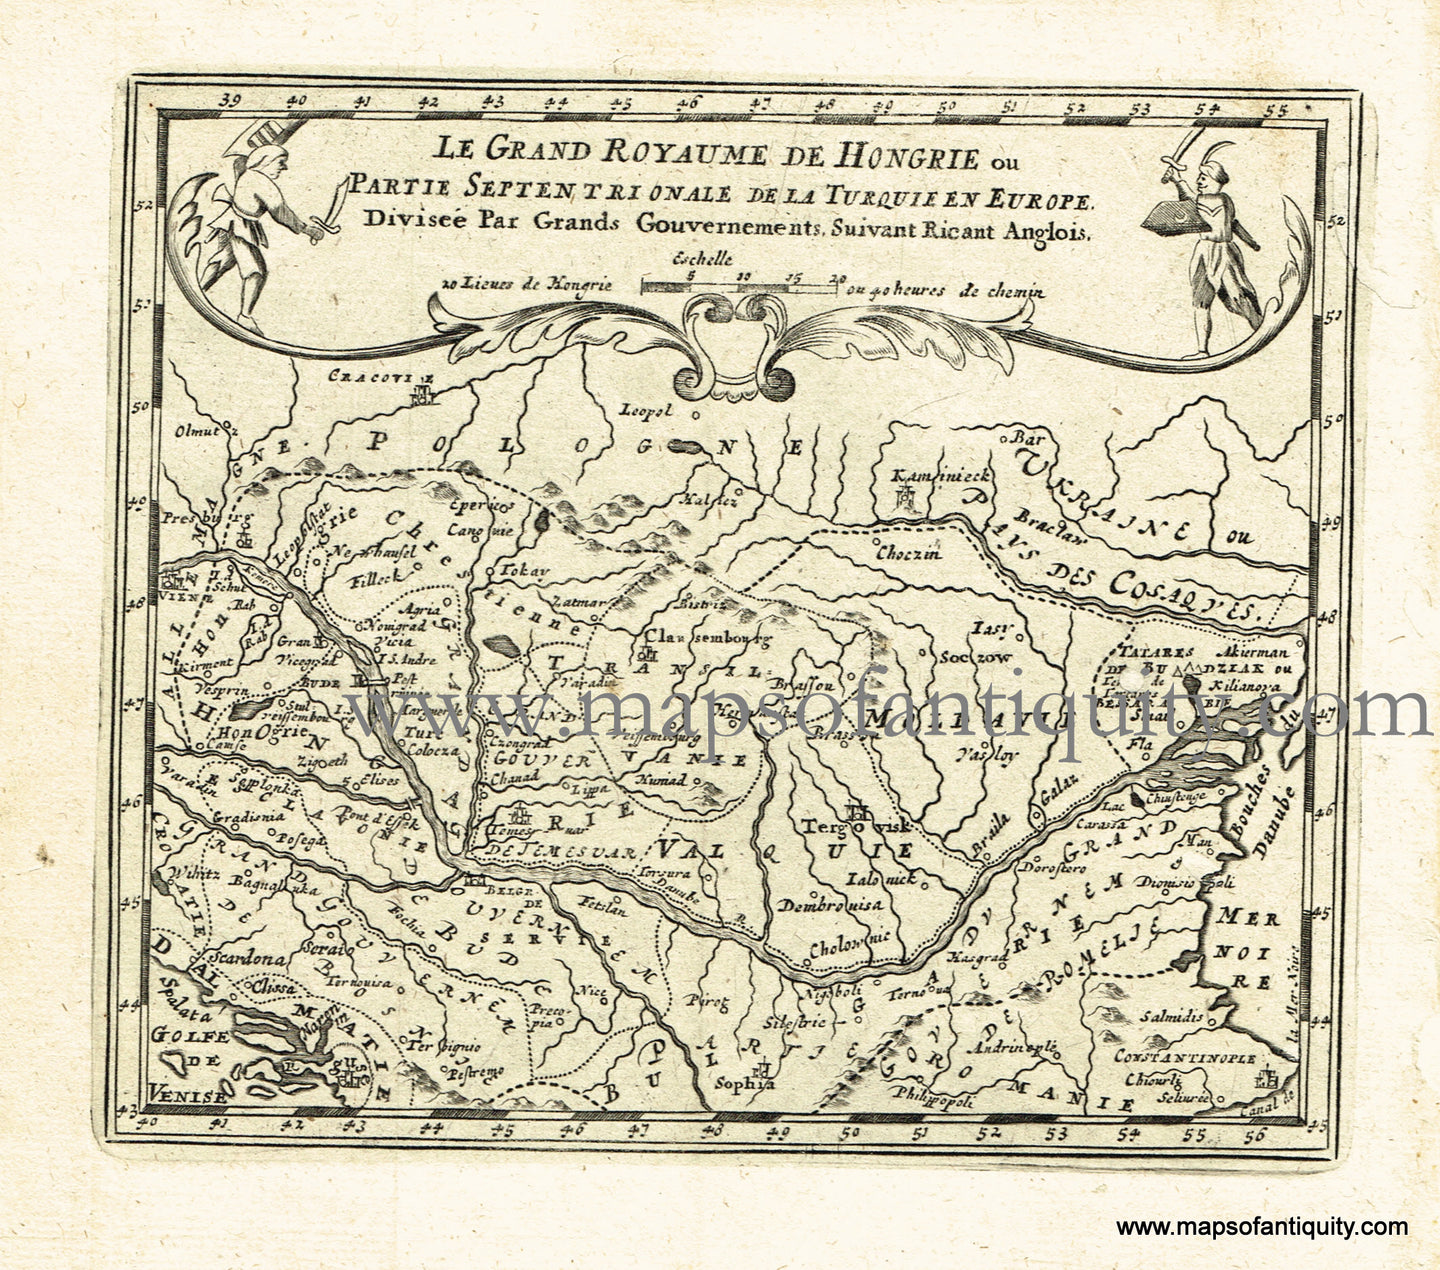 Antique-Black-and-White-Map-Le-Grand-Royaume-de-Hongrie-ou-Partie-Septentrionale-de-la-Turquie-en-Europe-(The-Balkans)-Europe-Hungary-1725-De-Aefferden-Maps-Of-Antiquity